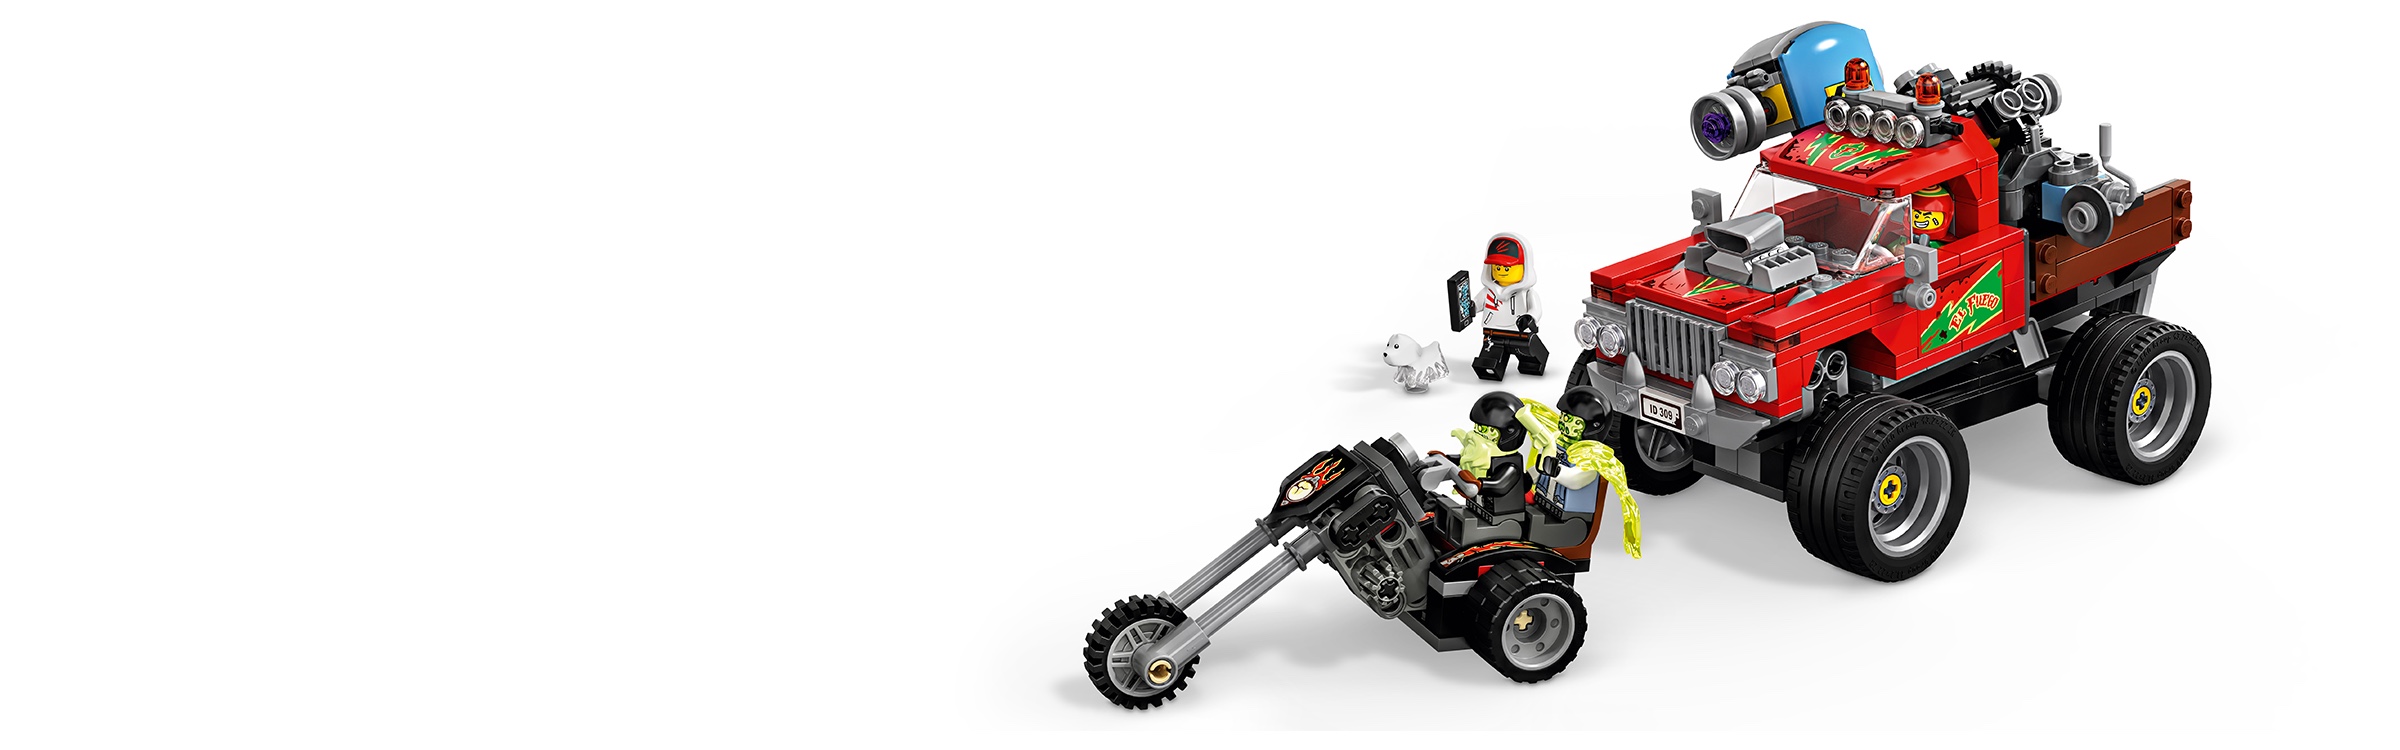 LEGO El Fuego's Stunt Truck Hidden Side 70421 for sale online 